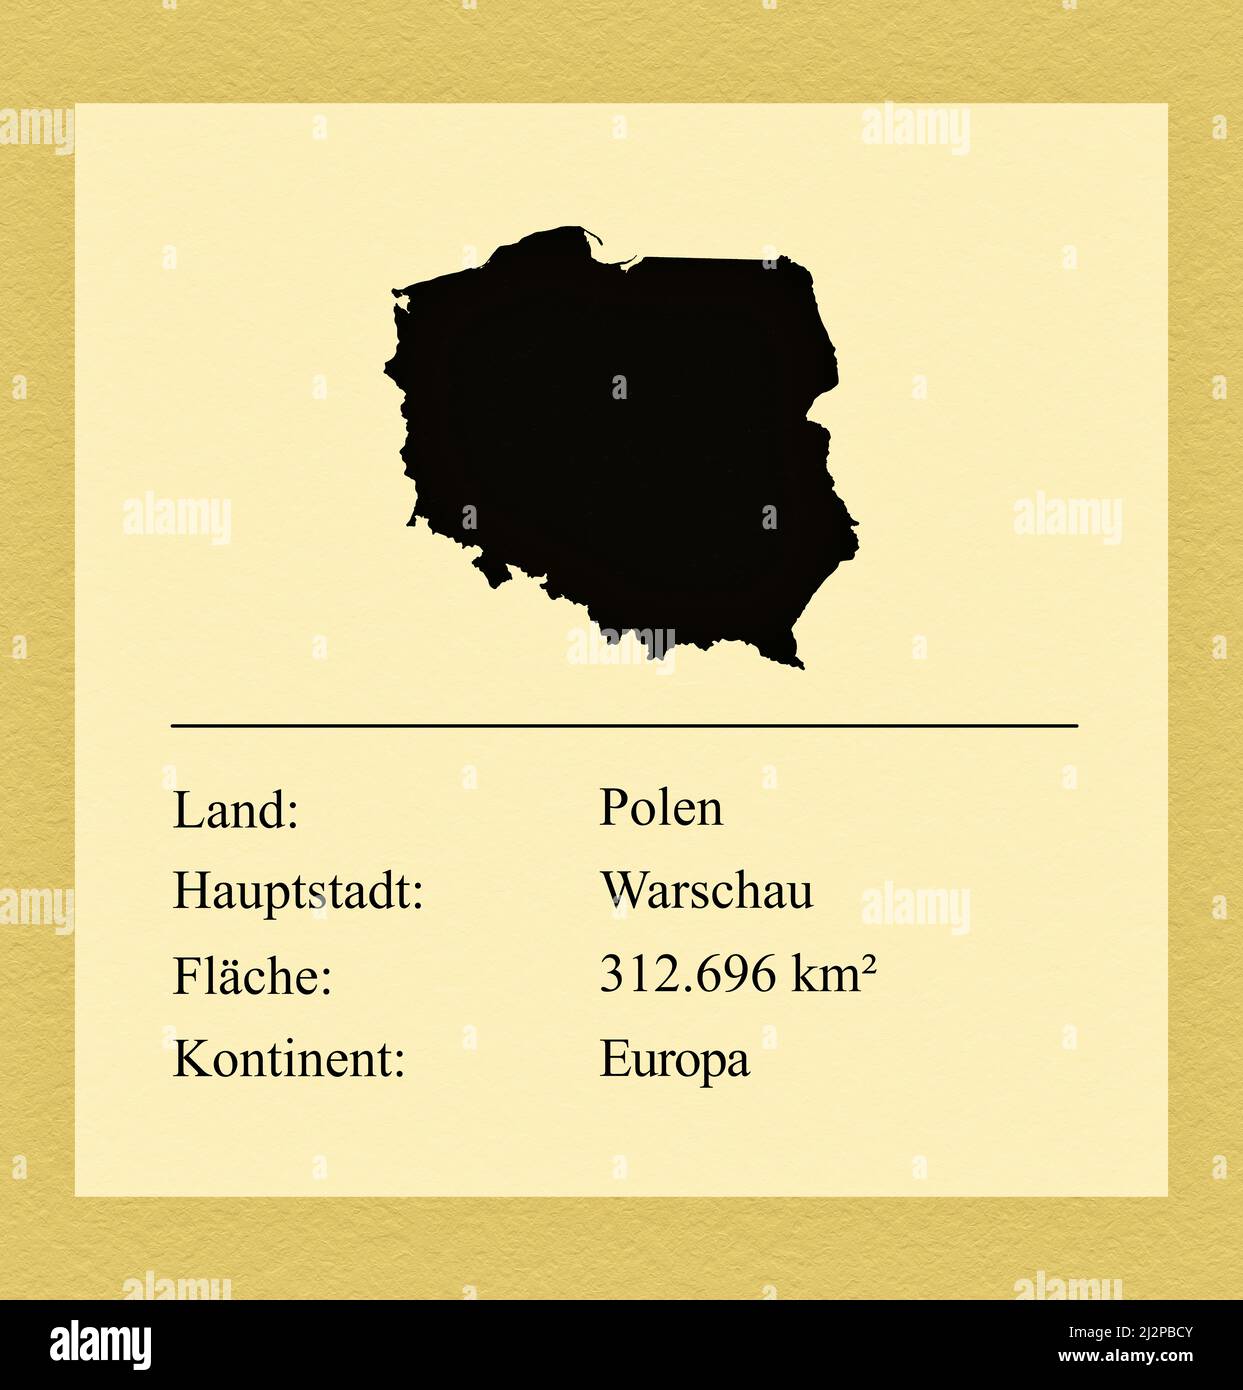 Umrisse des Landes Polen, darunter ein kleiner Steckbrief mit Ländernamen, Hauptstadt, Fläche und Kontinent Foto de stock